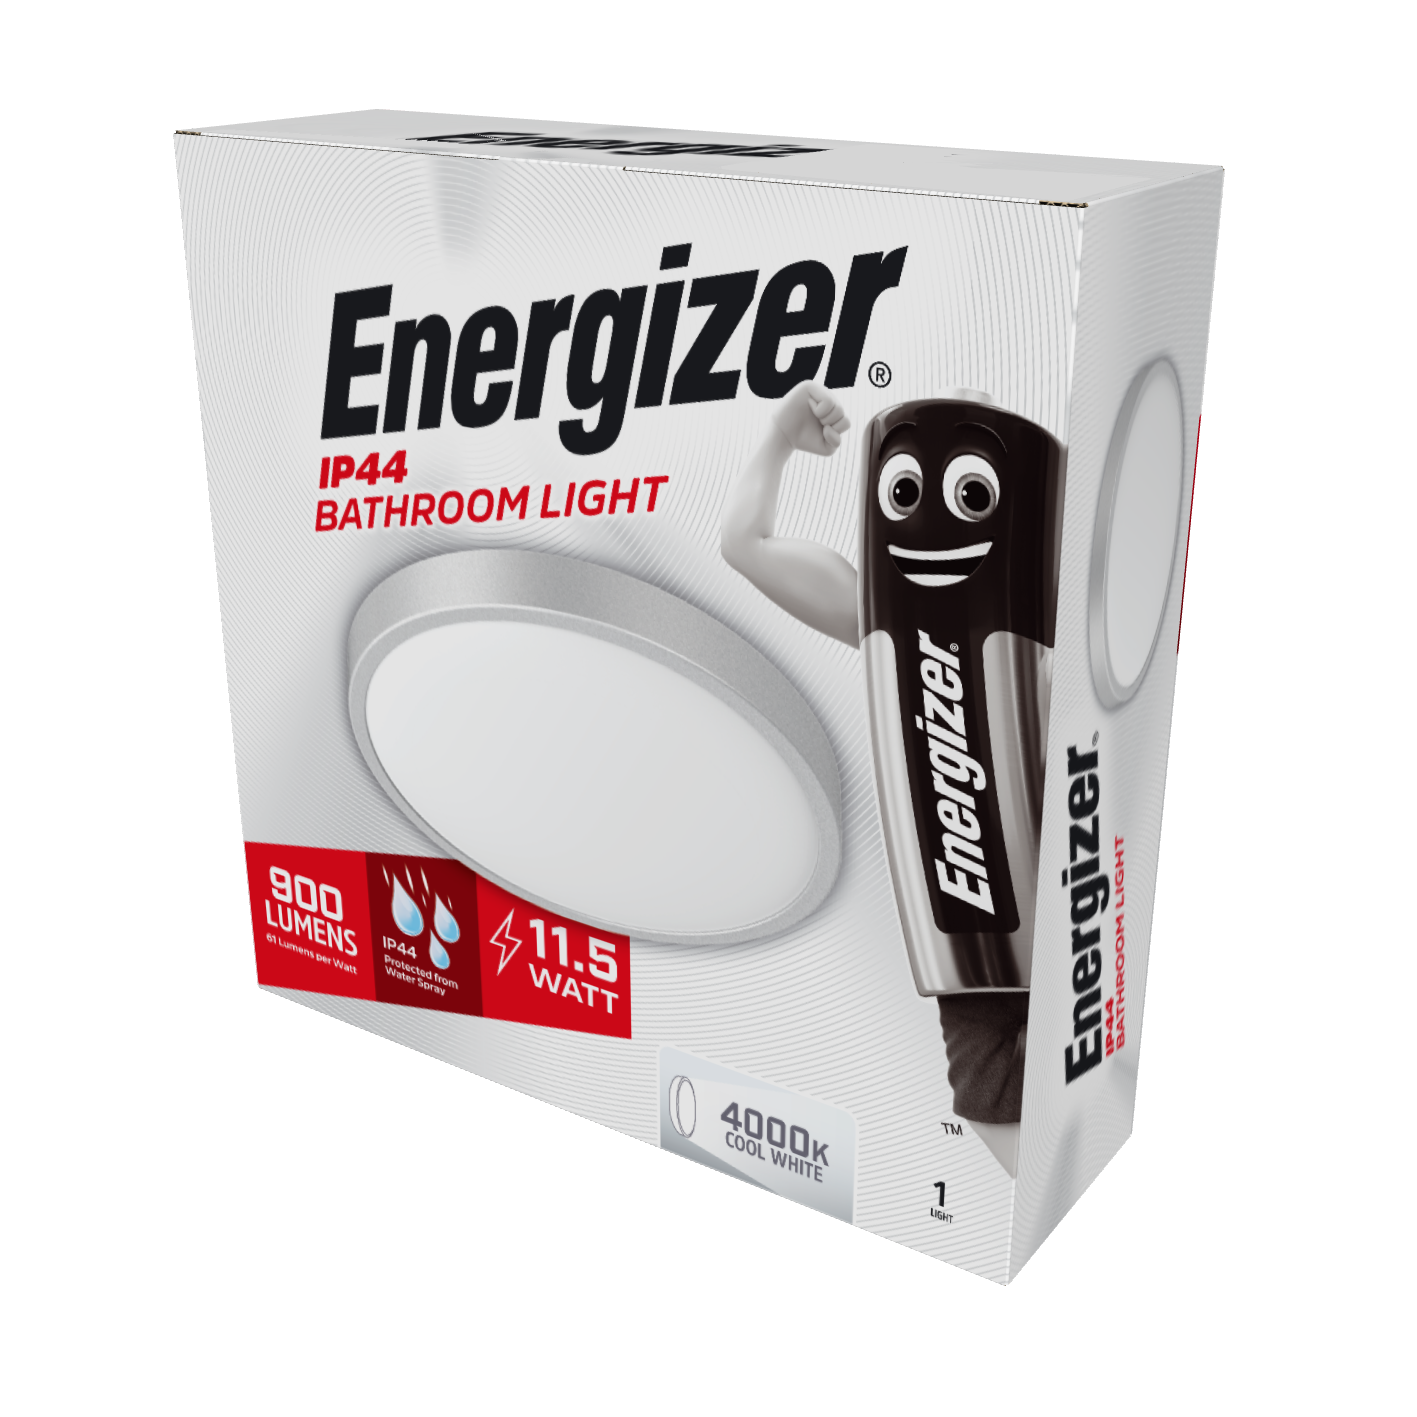 Energizer LED 250mm Bathroom Light - 11.5W - 900 Lumen - 4,000K (Cool White)